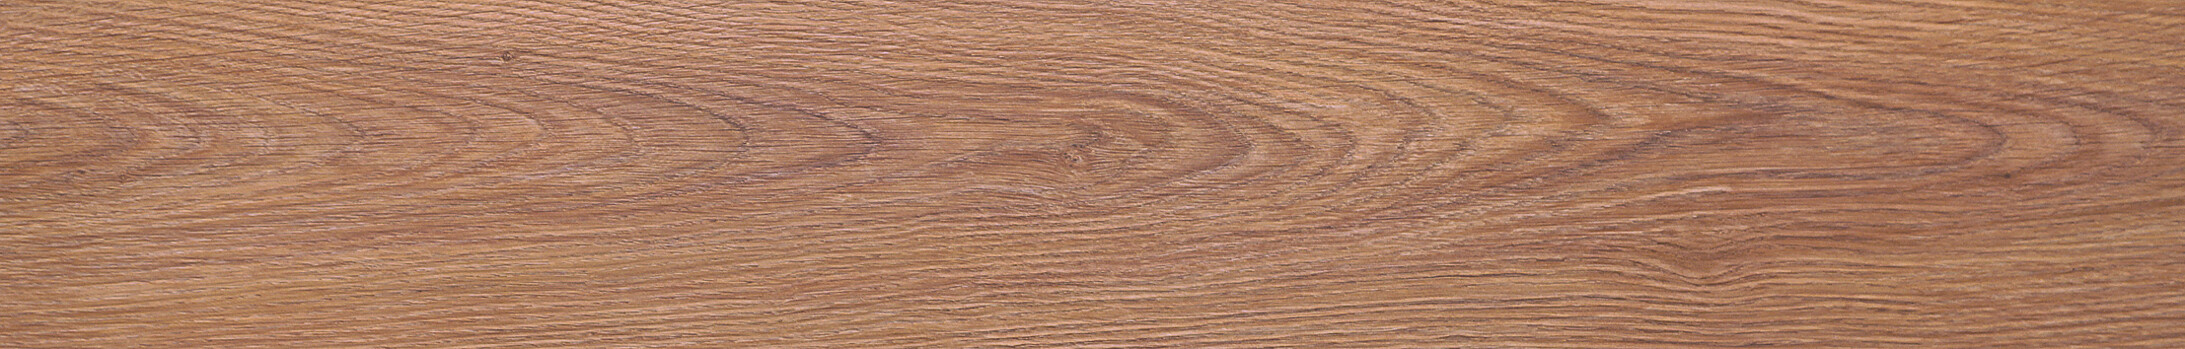 لمینت اووک وود(oak wood) - کد 181101